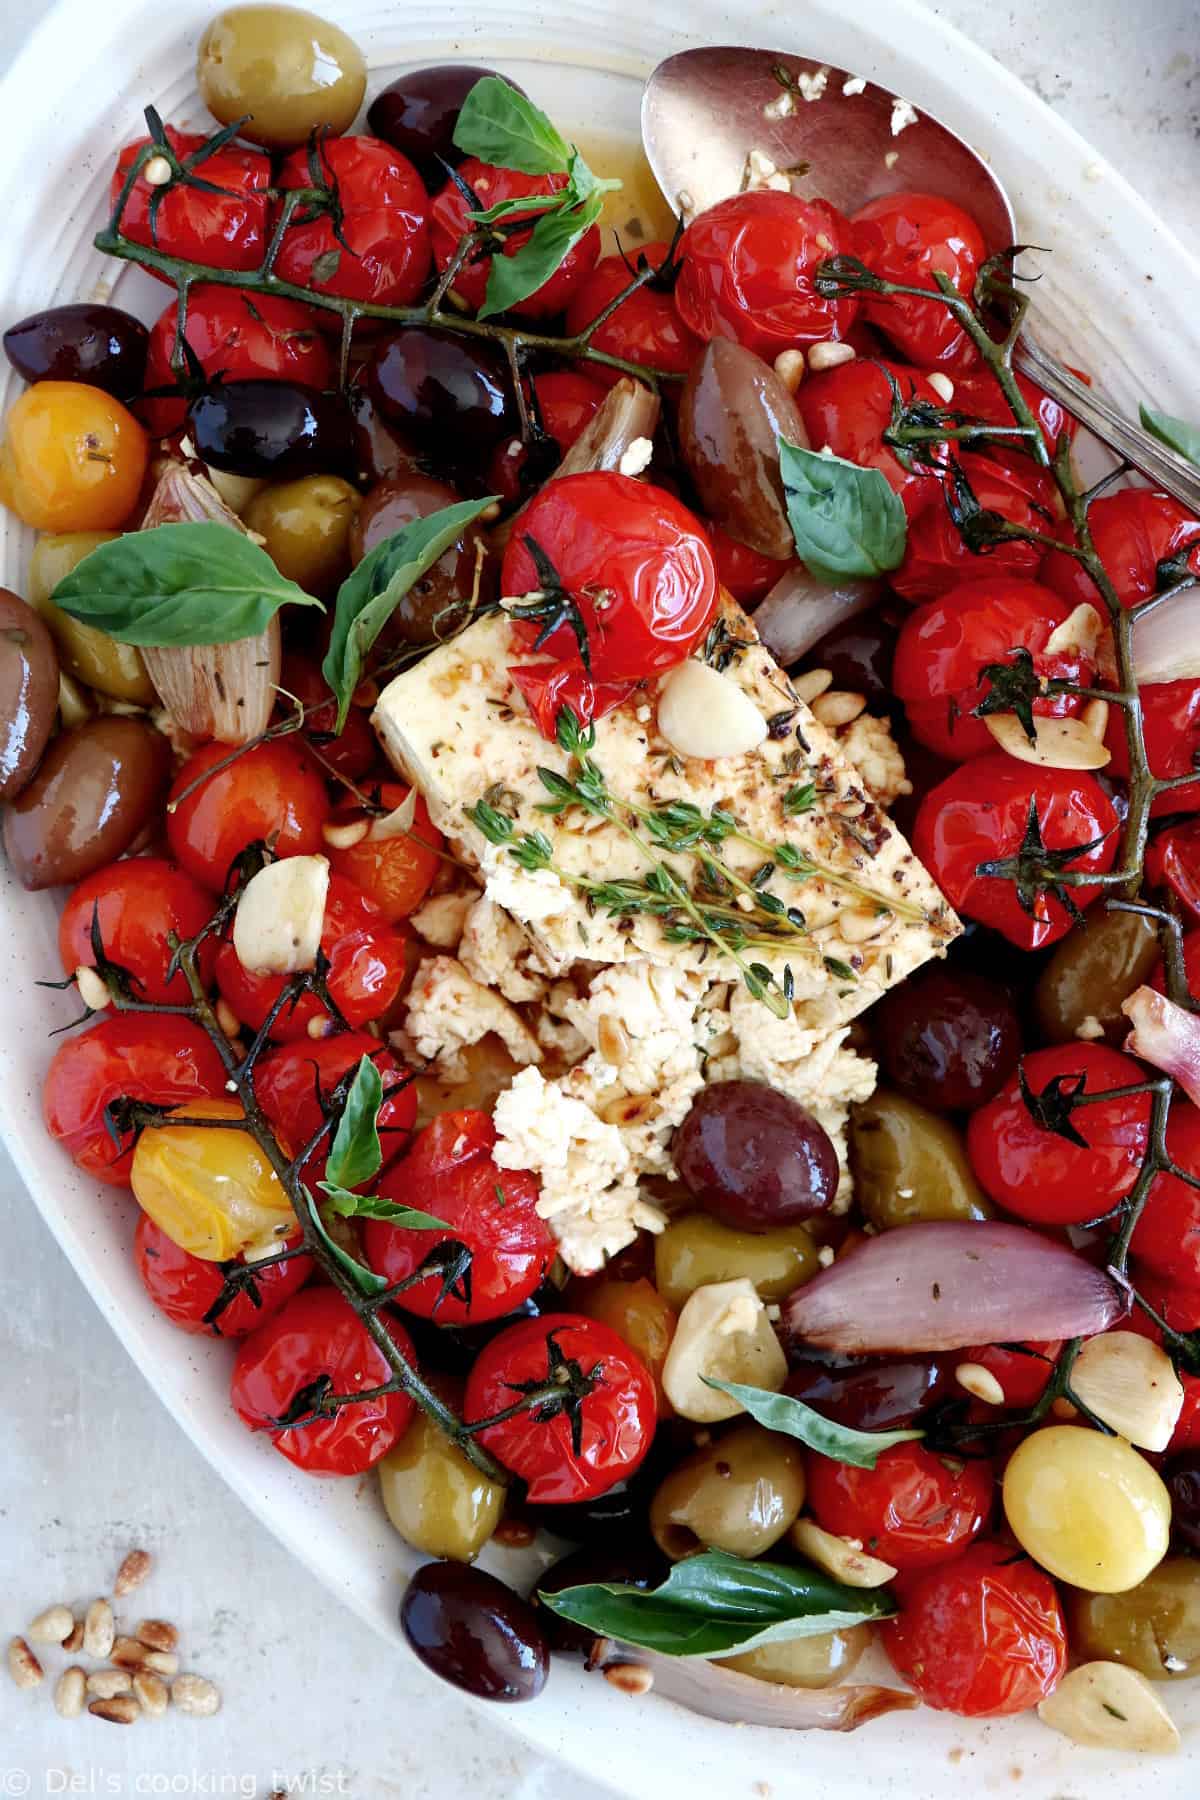 Découvrez ce plat de "baked feta", qui consiste en de la feta rôtie au four avec des tomates cerises confites et des olives marinées dans un mélange d'huile d'olive et d'herbes.